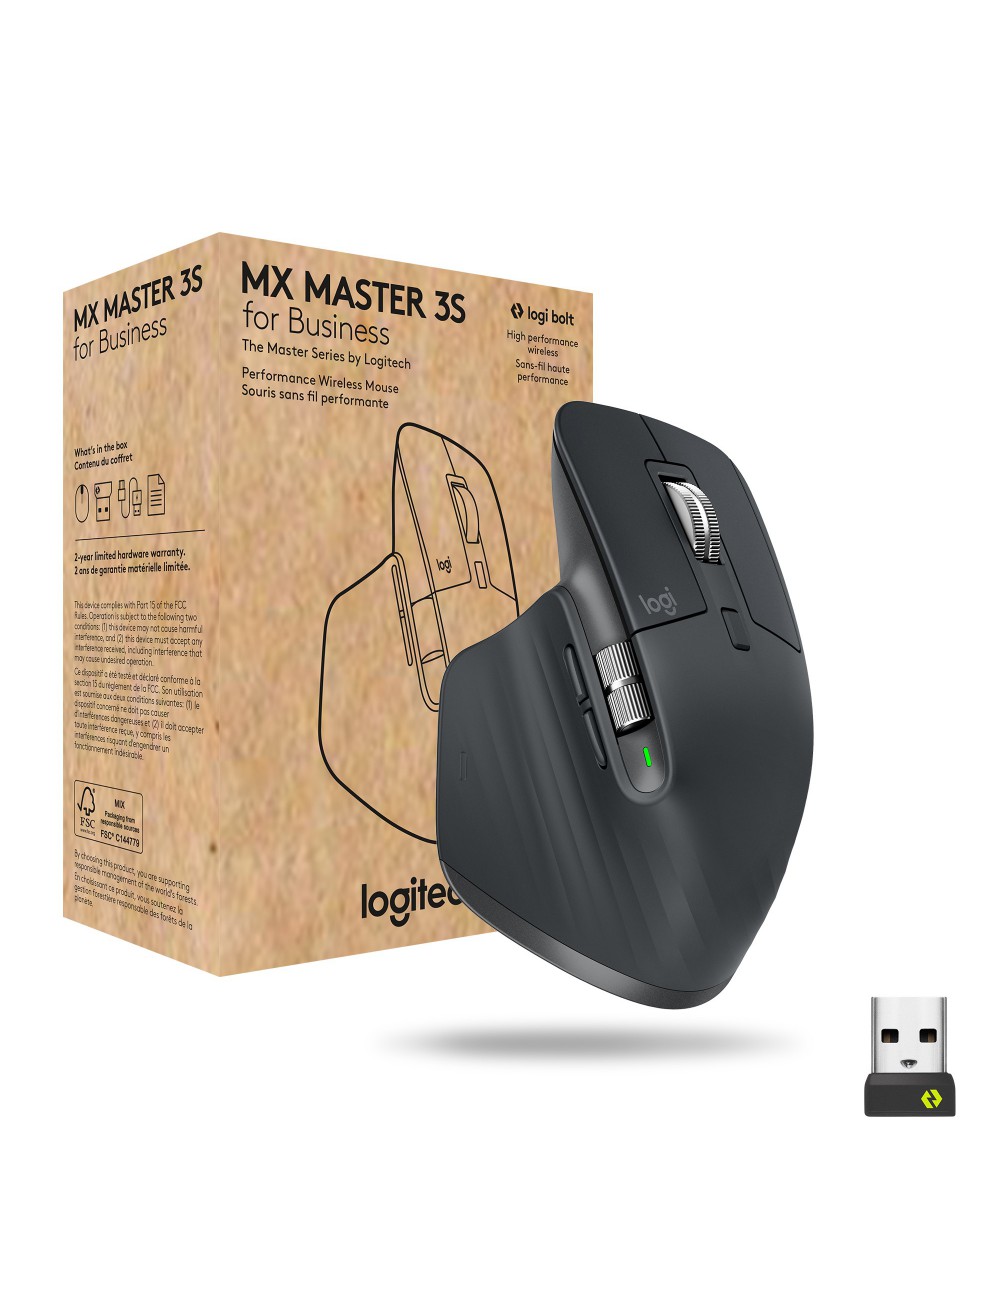 Logitech MX Master 3s for Business souris Bureau Droitier RF sans fil + Bluetooth Laser 8000 DPI